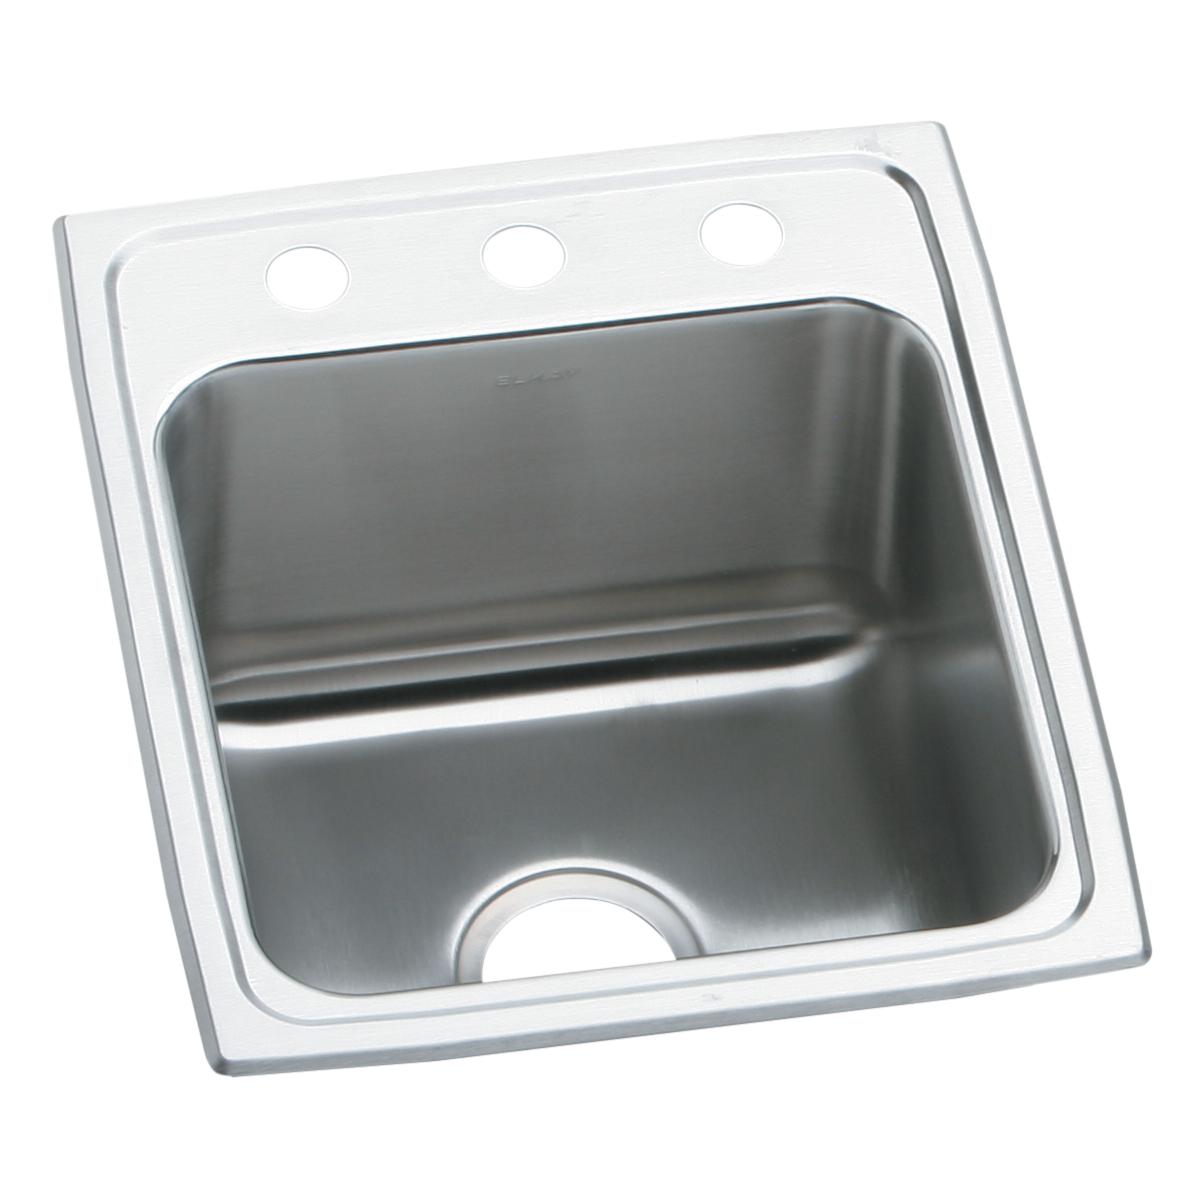 Elkay Lustertone Classic 17" x 20" x 10-1/8" Stainless Steel Single Bowl Drop-in Sink